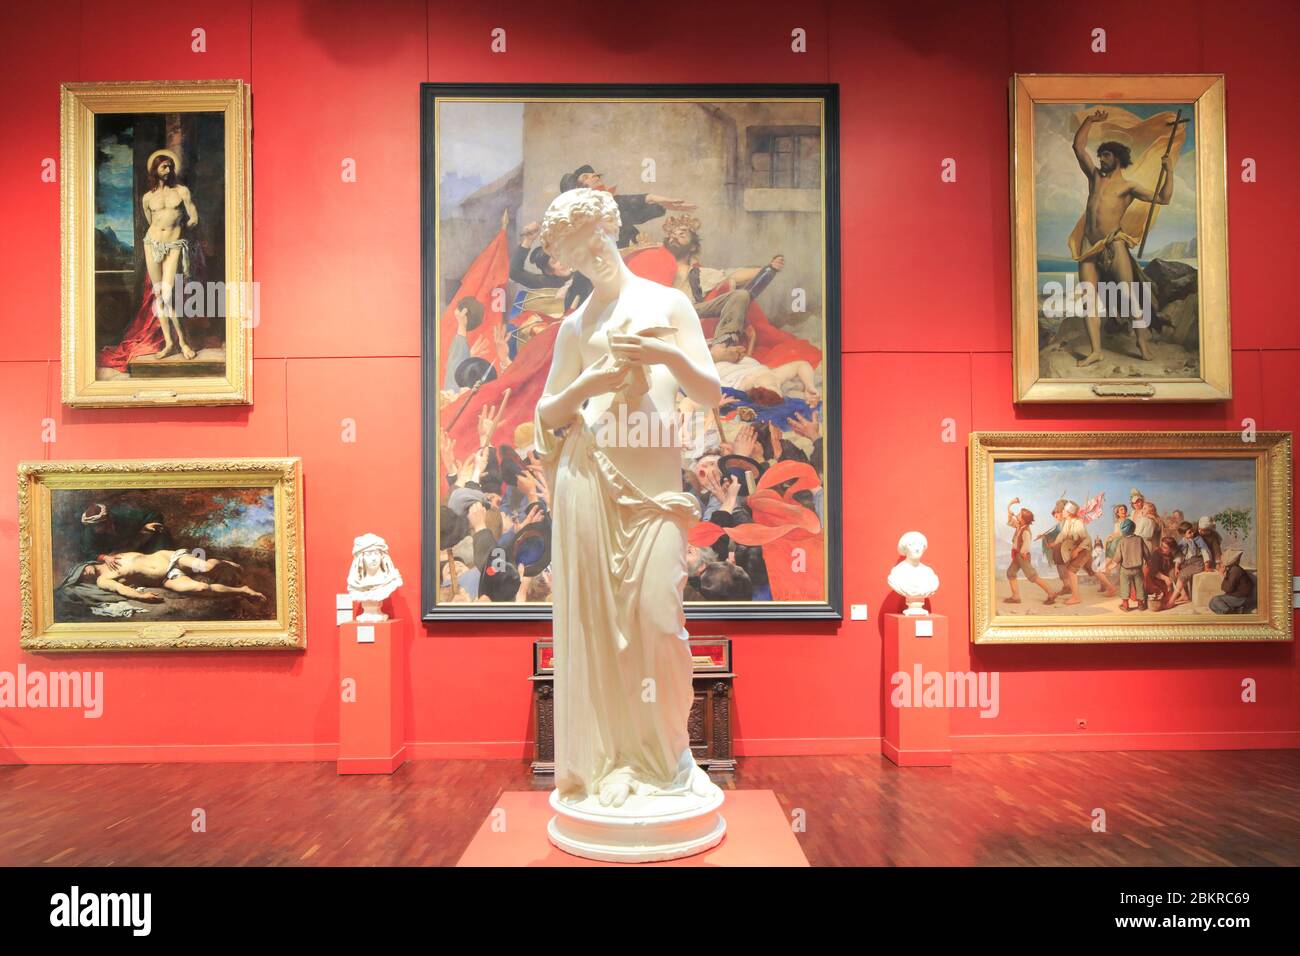 France, Loiret, Orléans, Musée des Beaux Arts (fondé en 1797), salle rouge (collections françaises du XIXe siècle) Banque D'Images